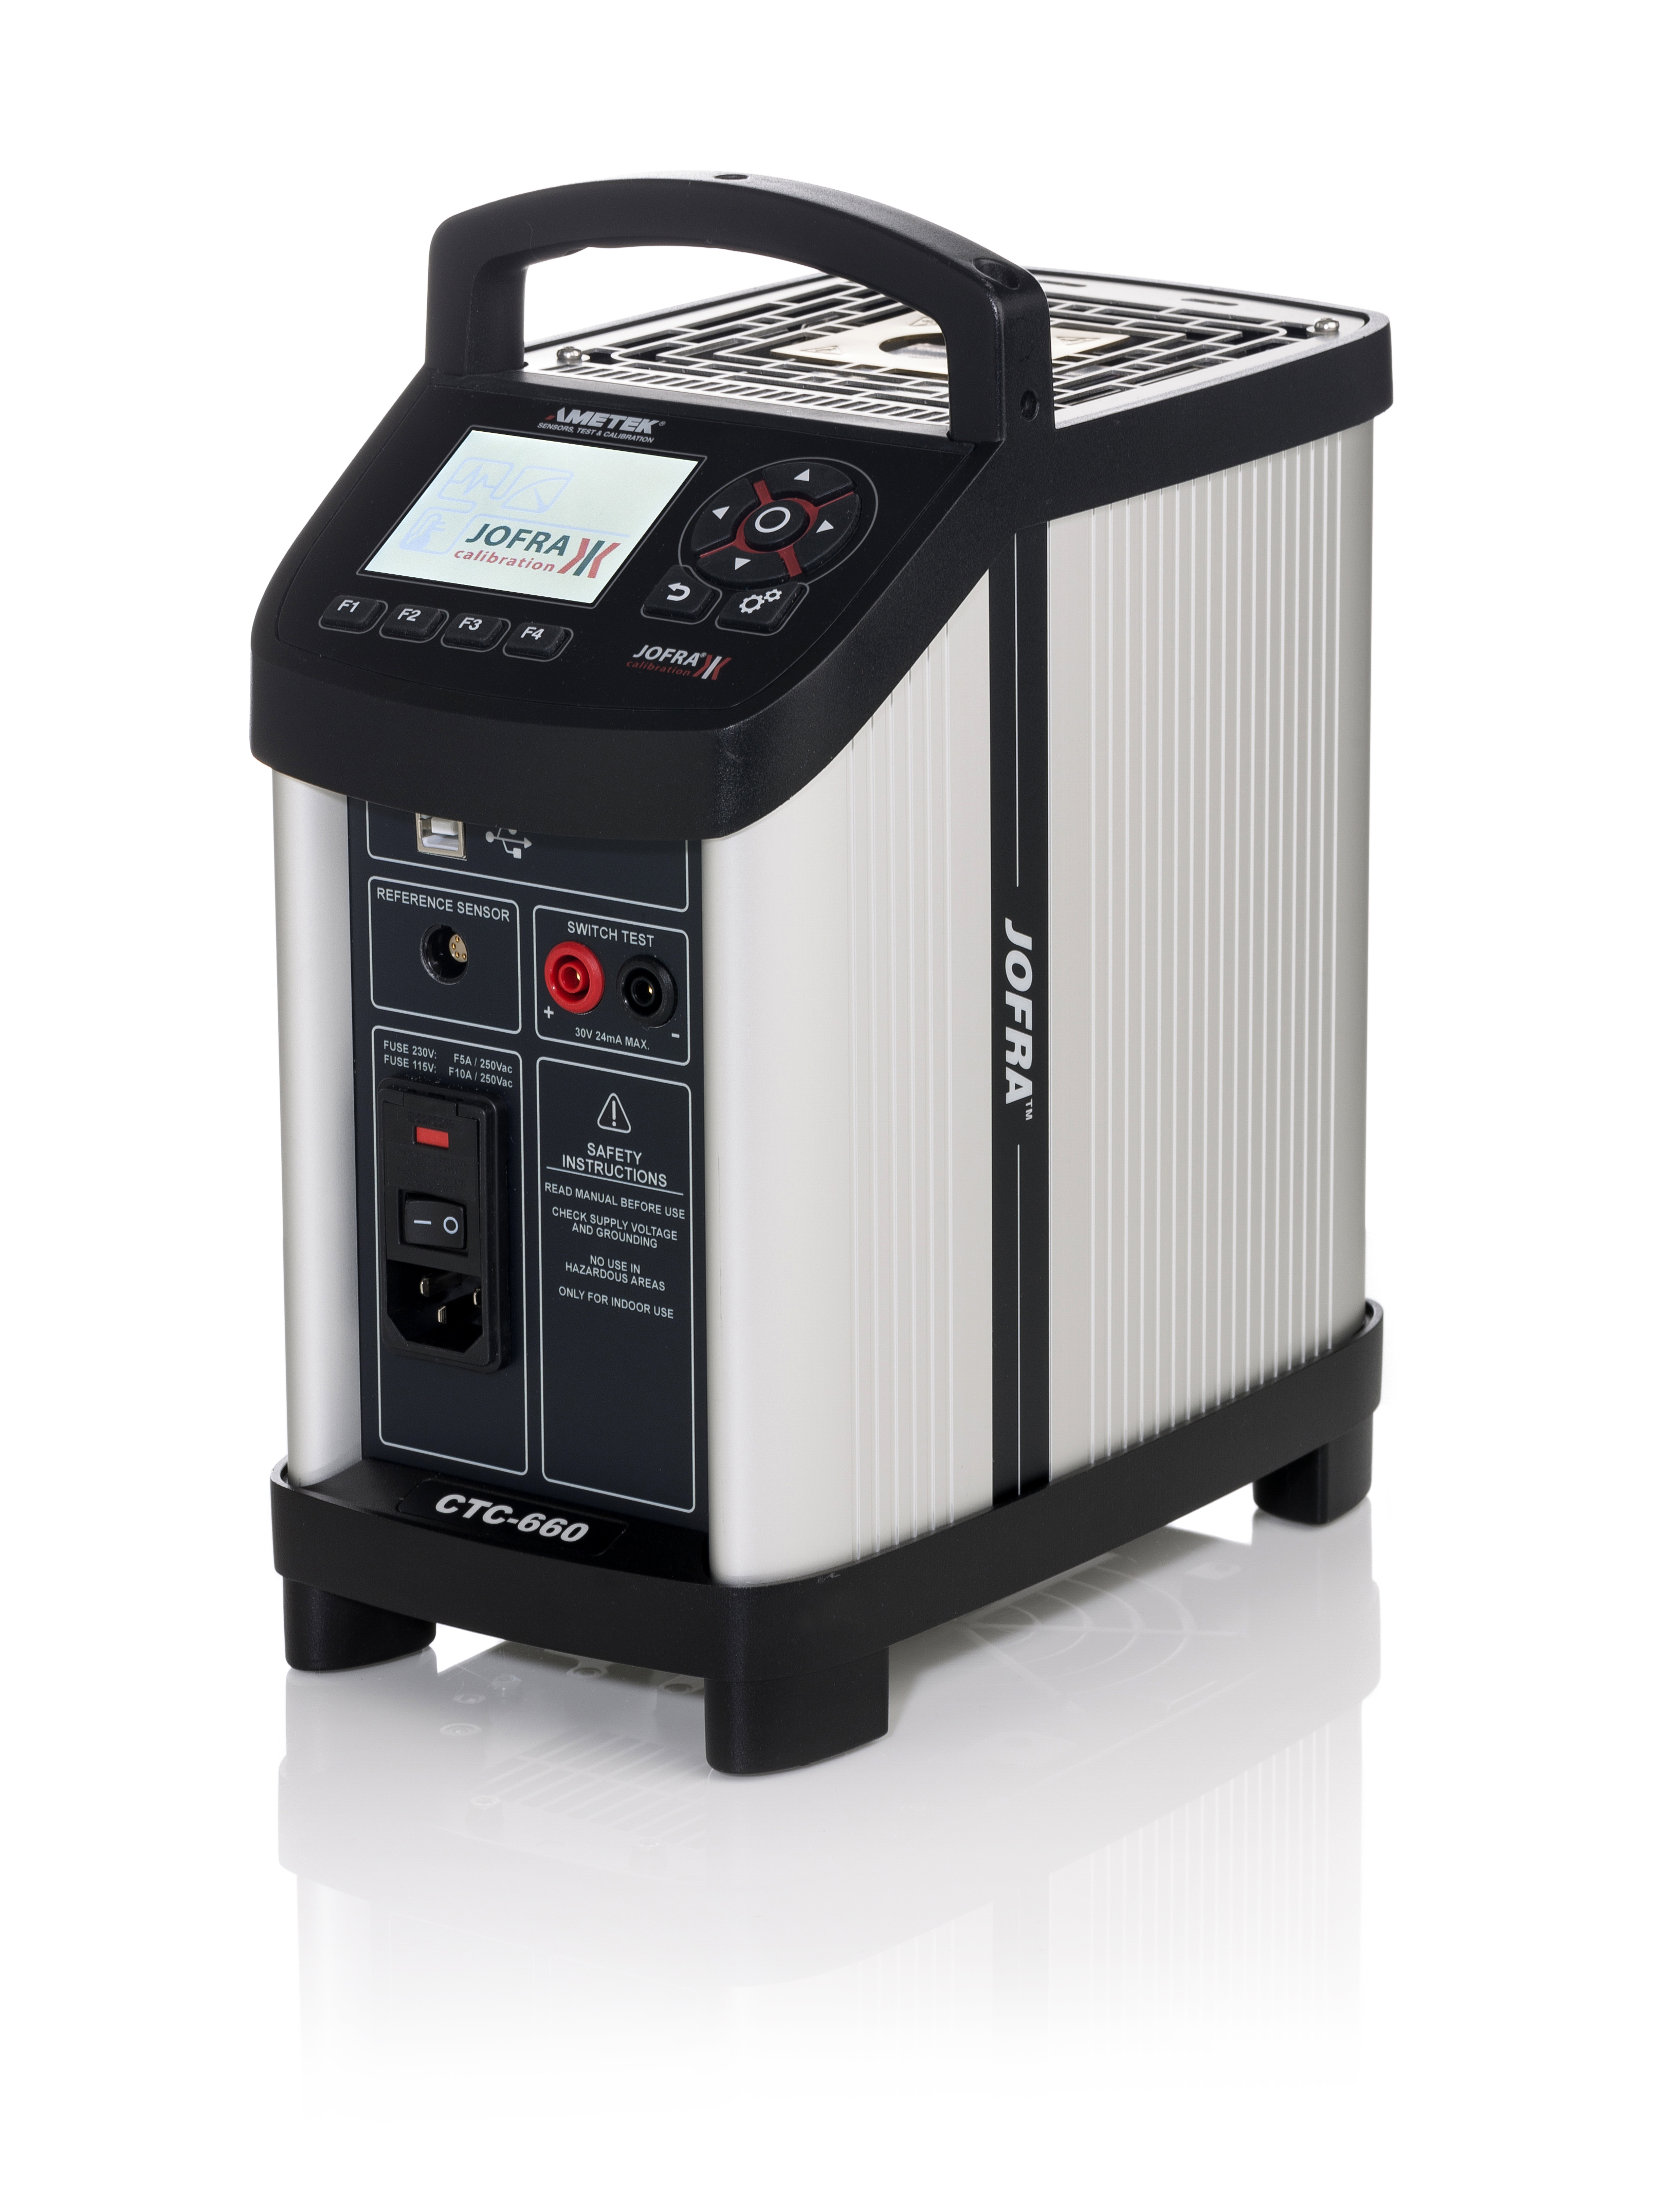 Ametek Jofra CTC660 Dryblock Temperature Calibrator